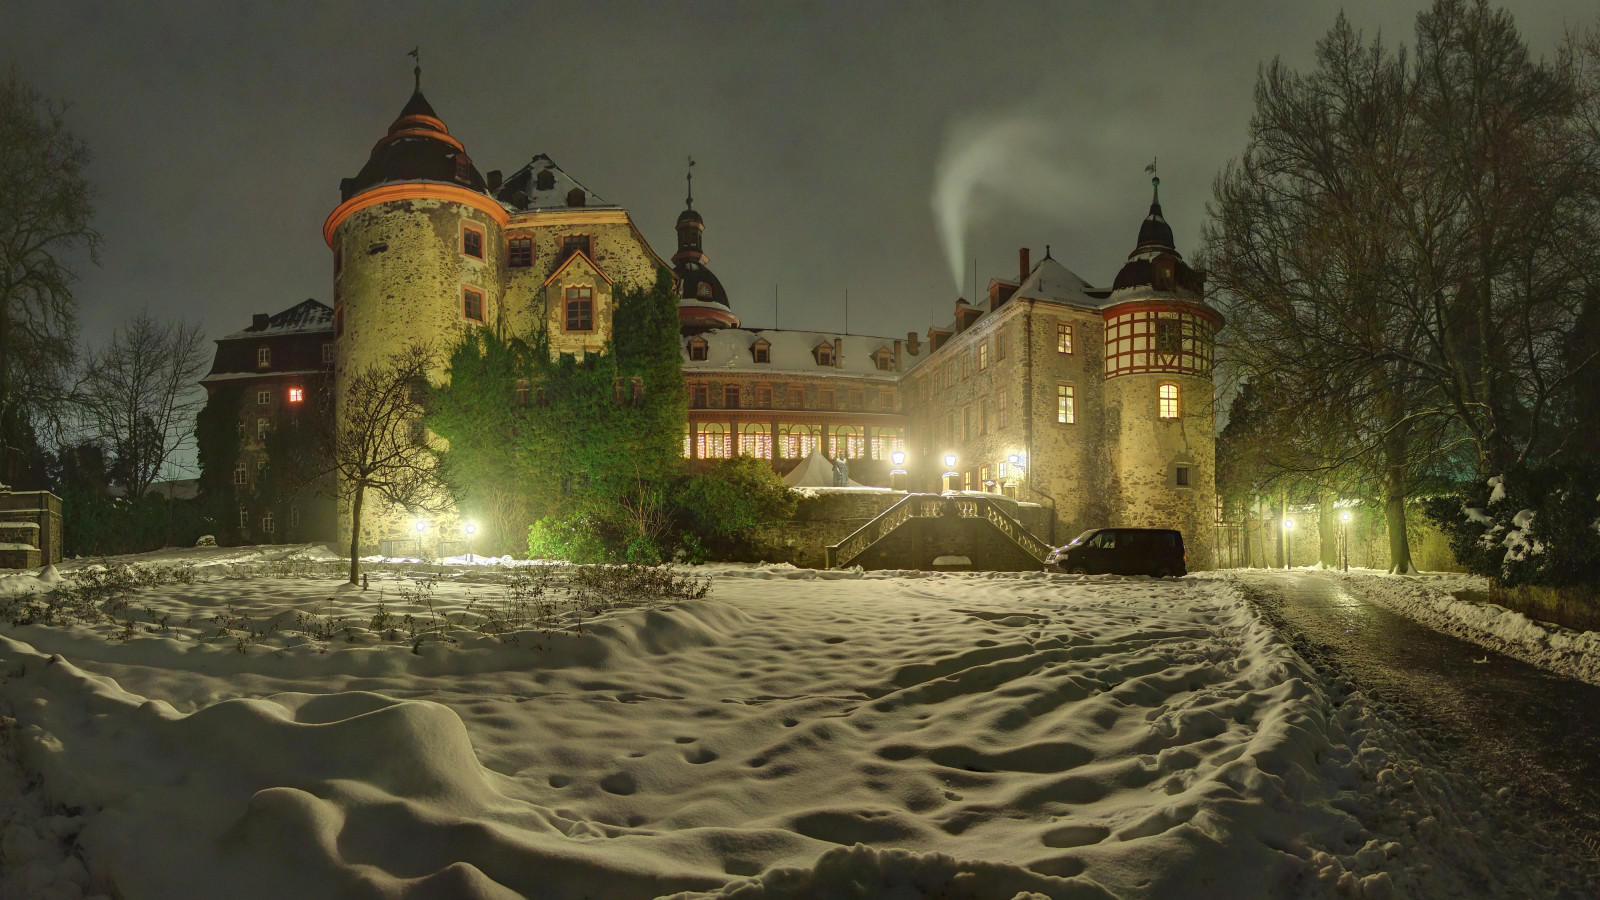 salju, musim dingin, pohon, lampu, malam, Jerman, Kastil, salju